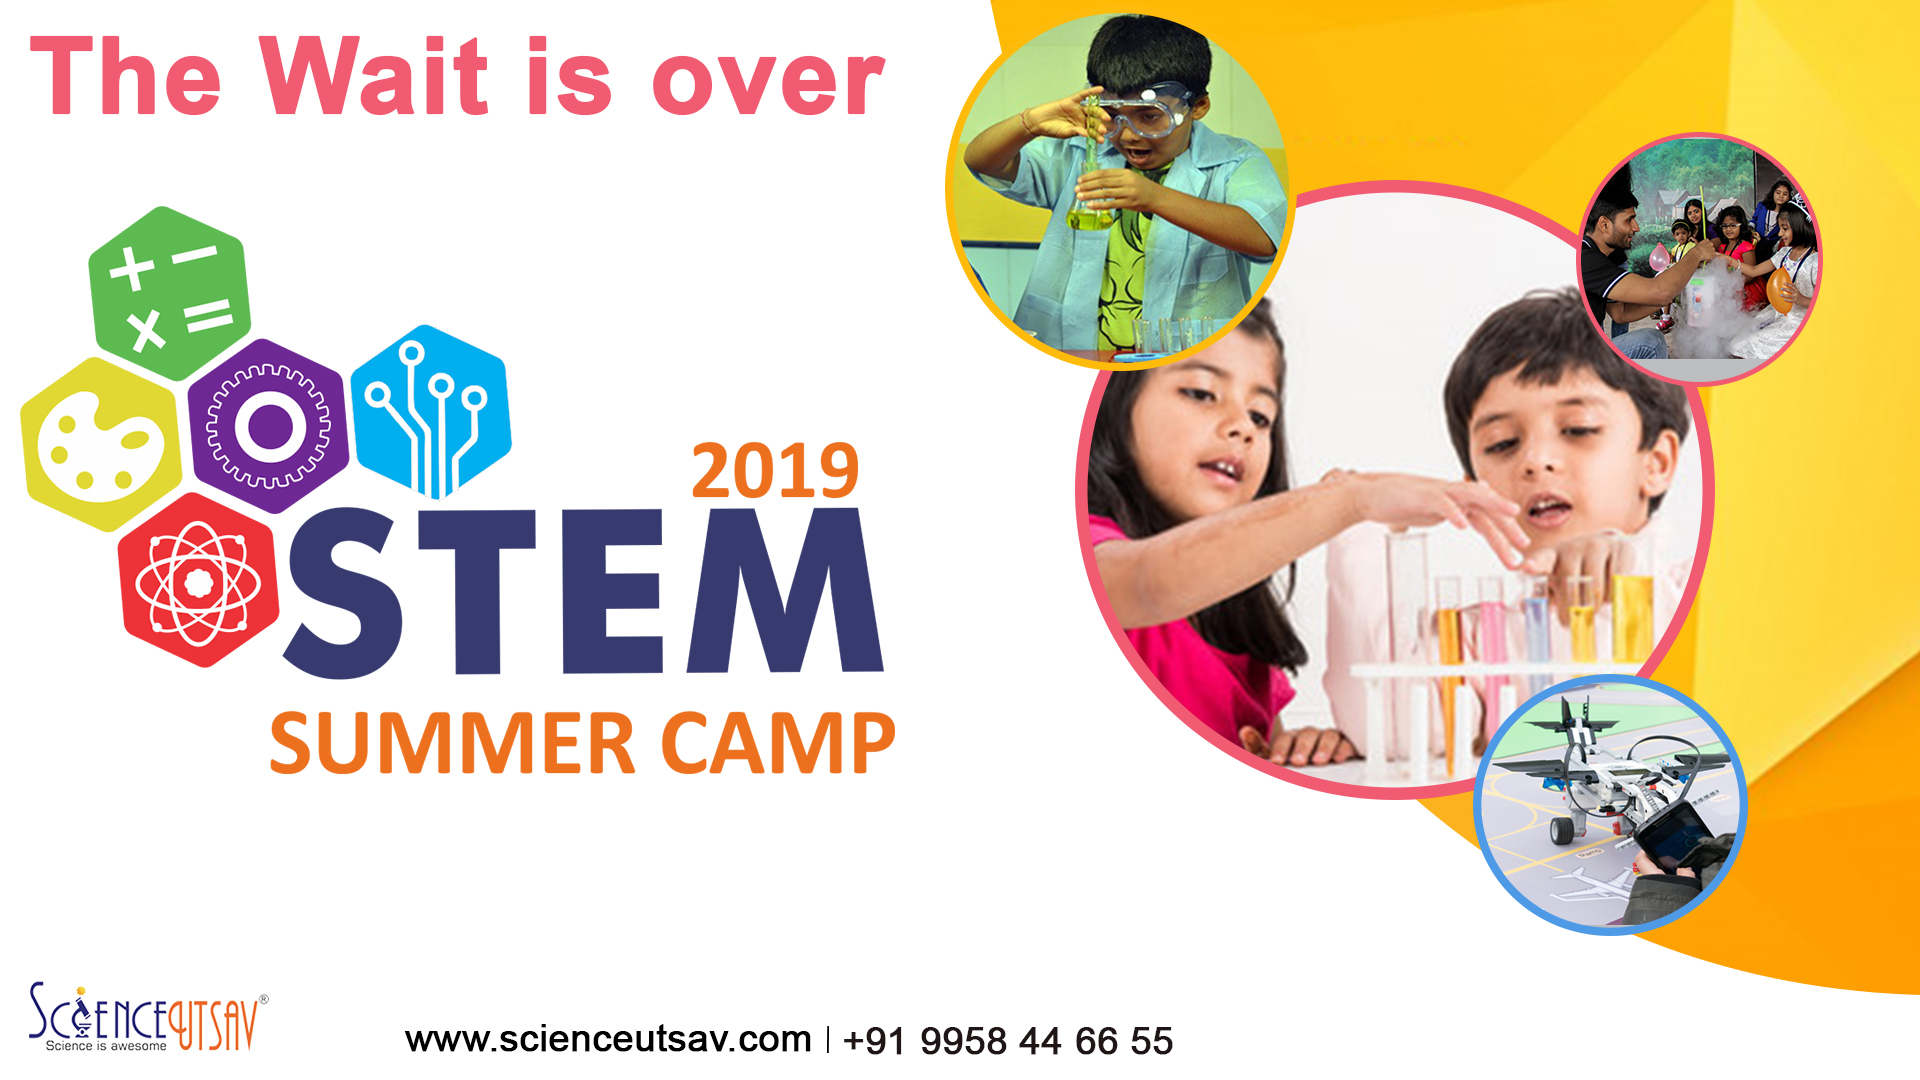 Summer Camp 2019 in Juhu,Mumbai-Junior Inventor, Mumbai, Maharashtra, India